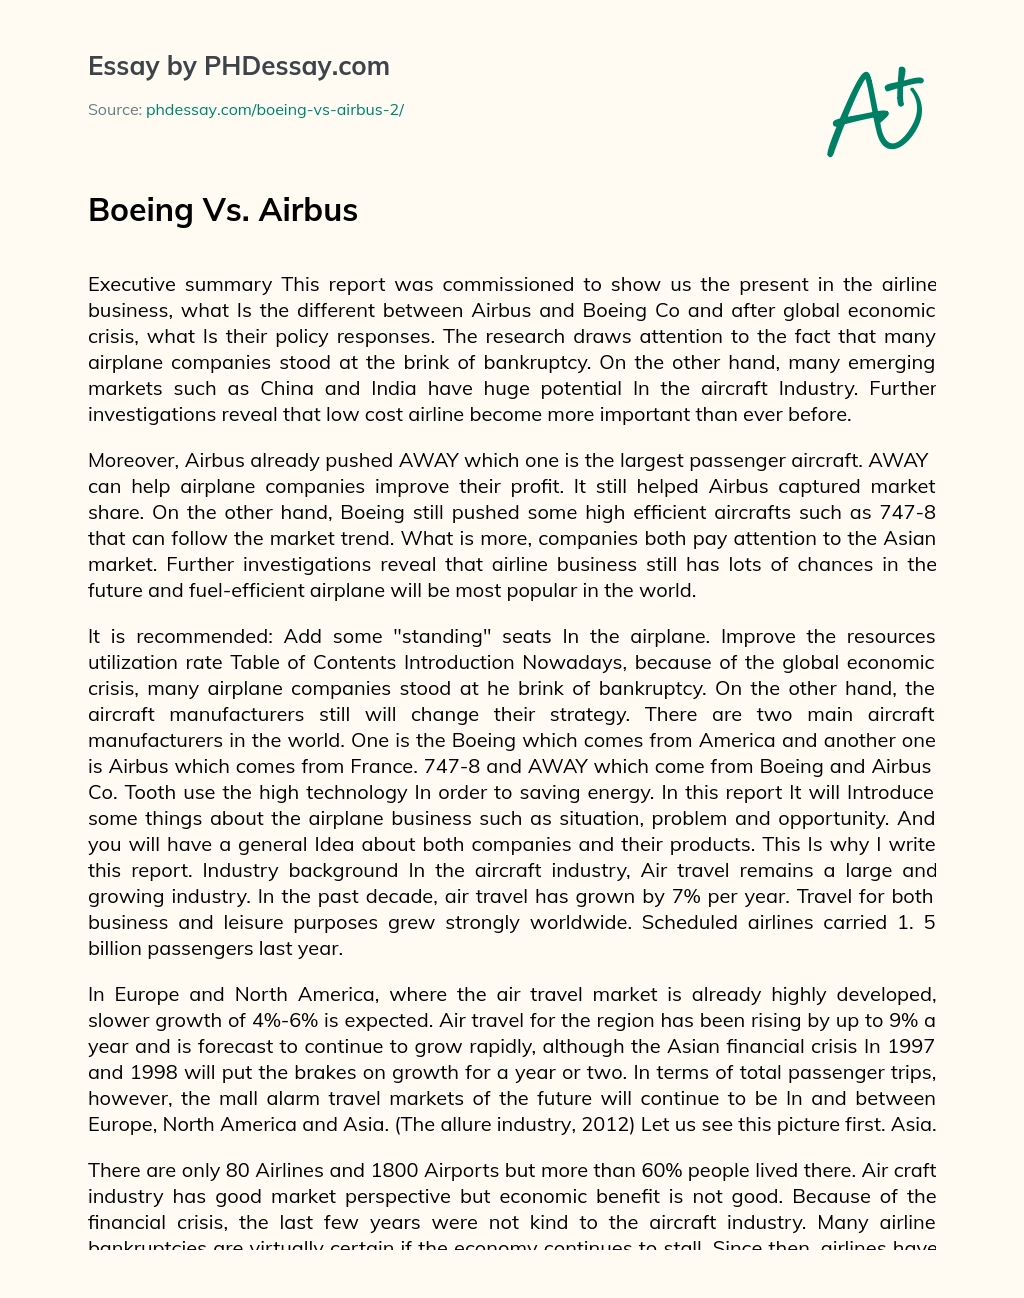 Boeing Vs. Airbus essay